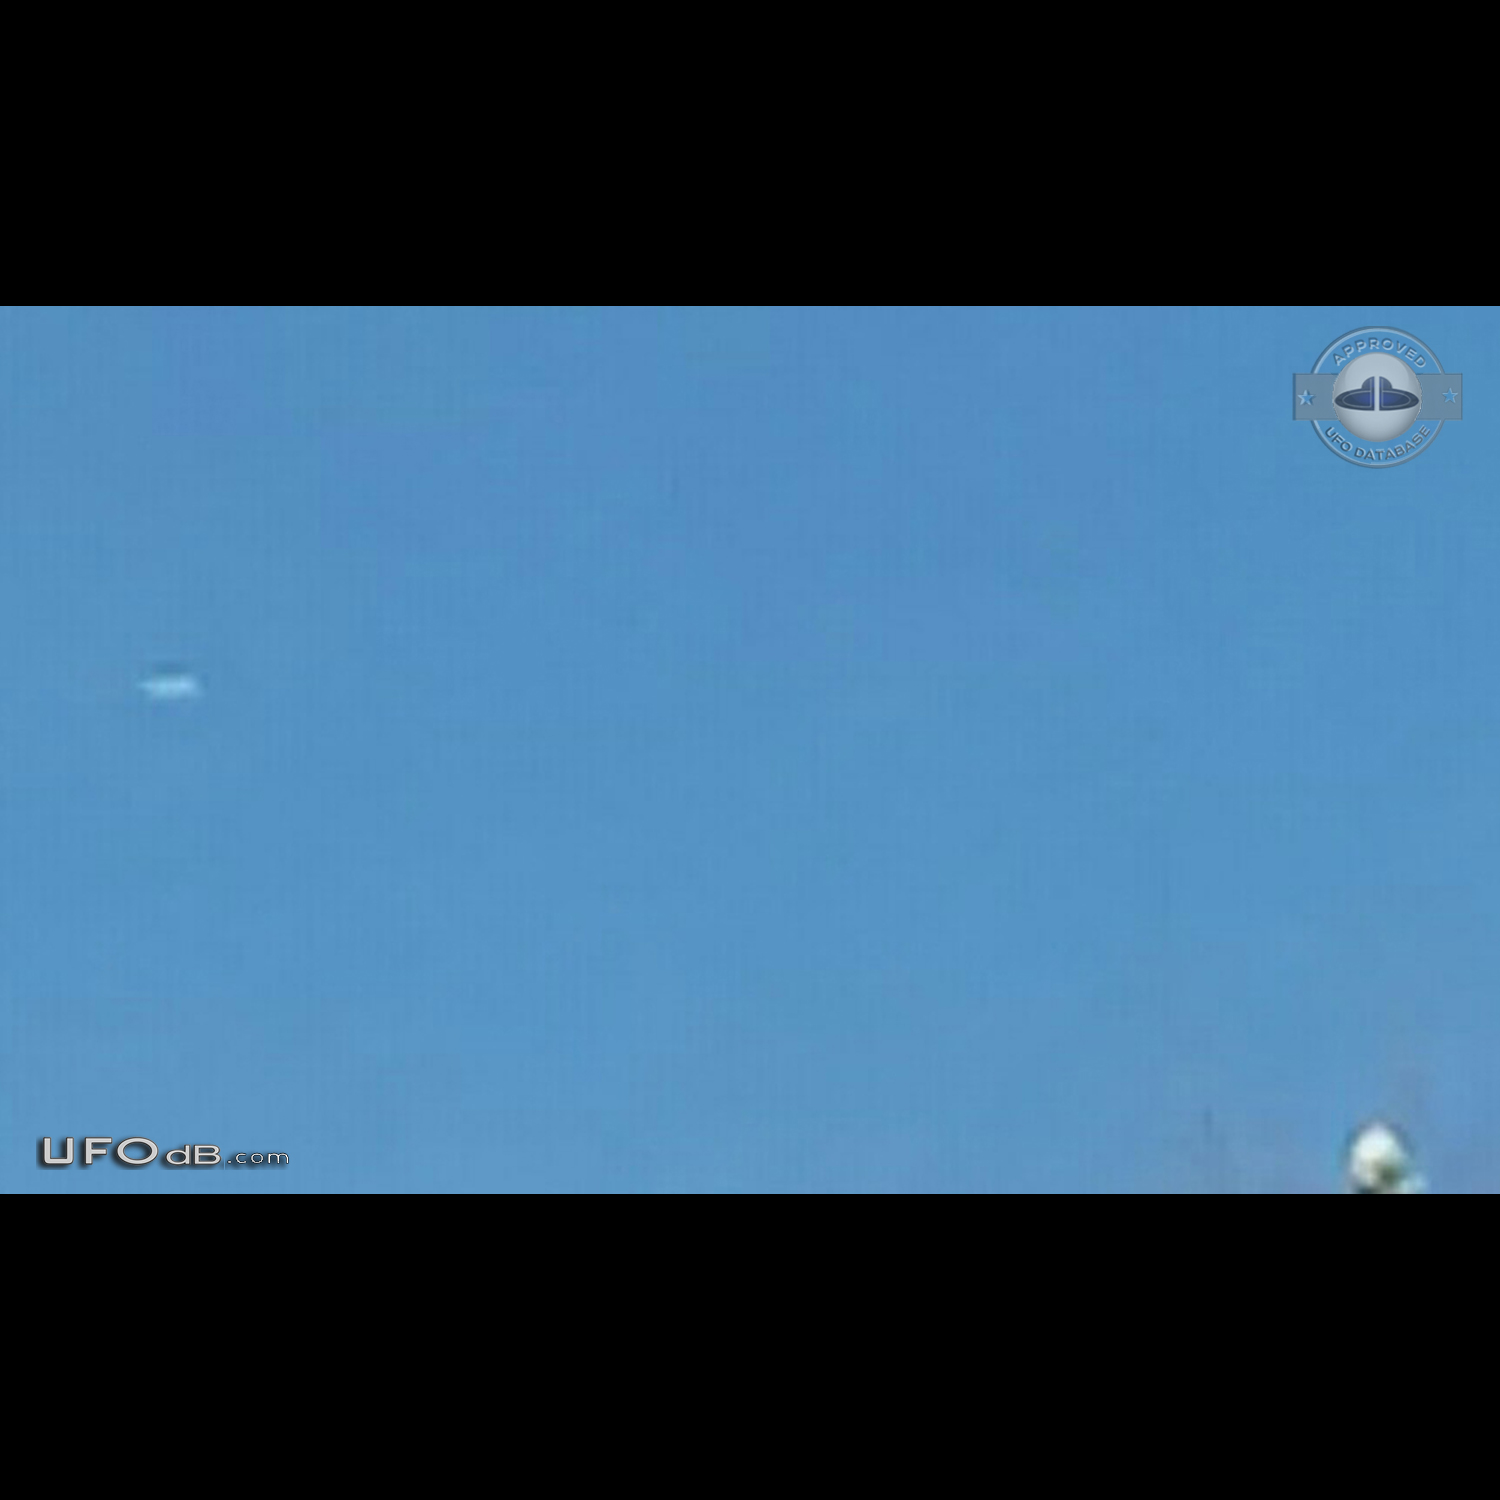 Silent silver Disk UFO gliding in the sky Dalton Pennsylvania USA 2015 UFO Picture #669-5